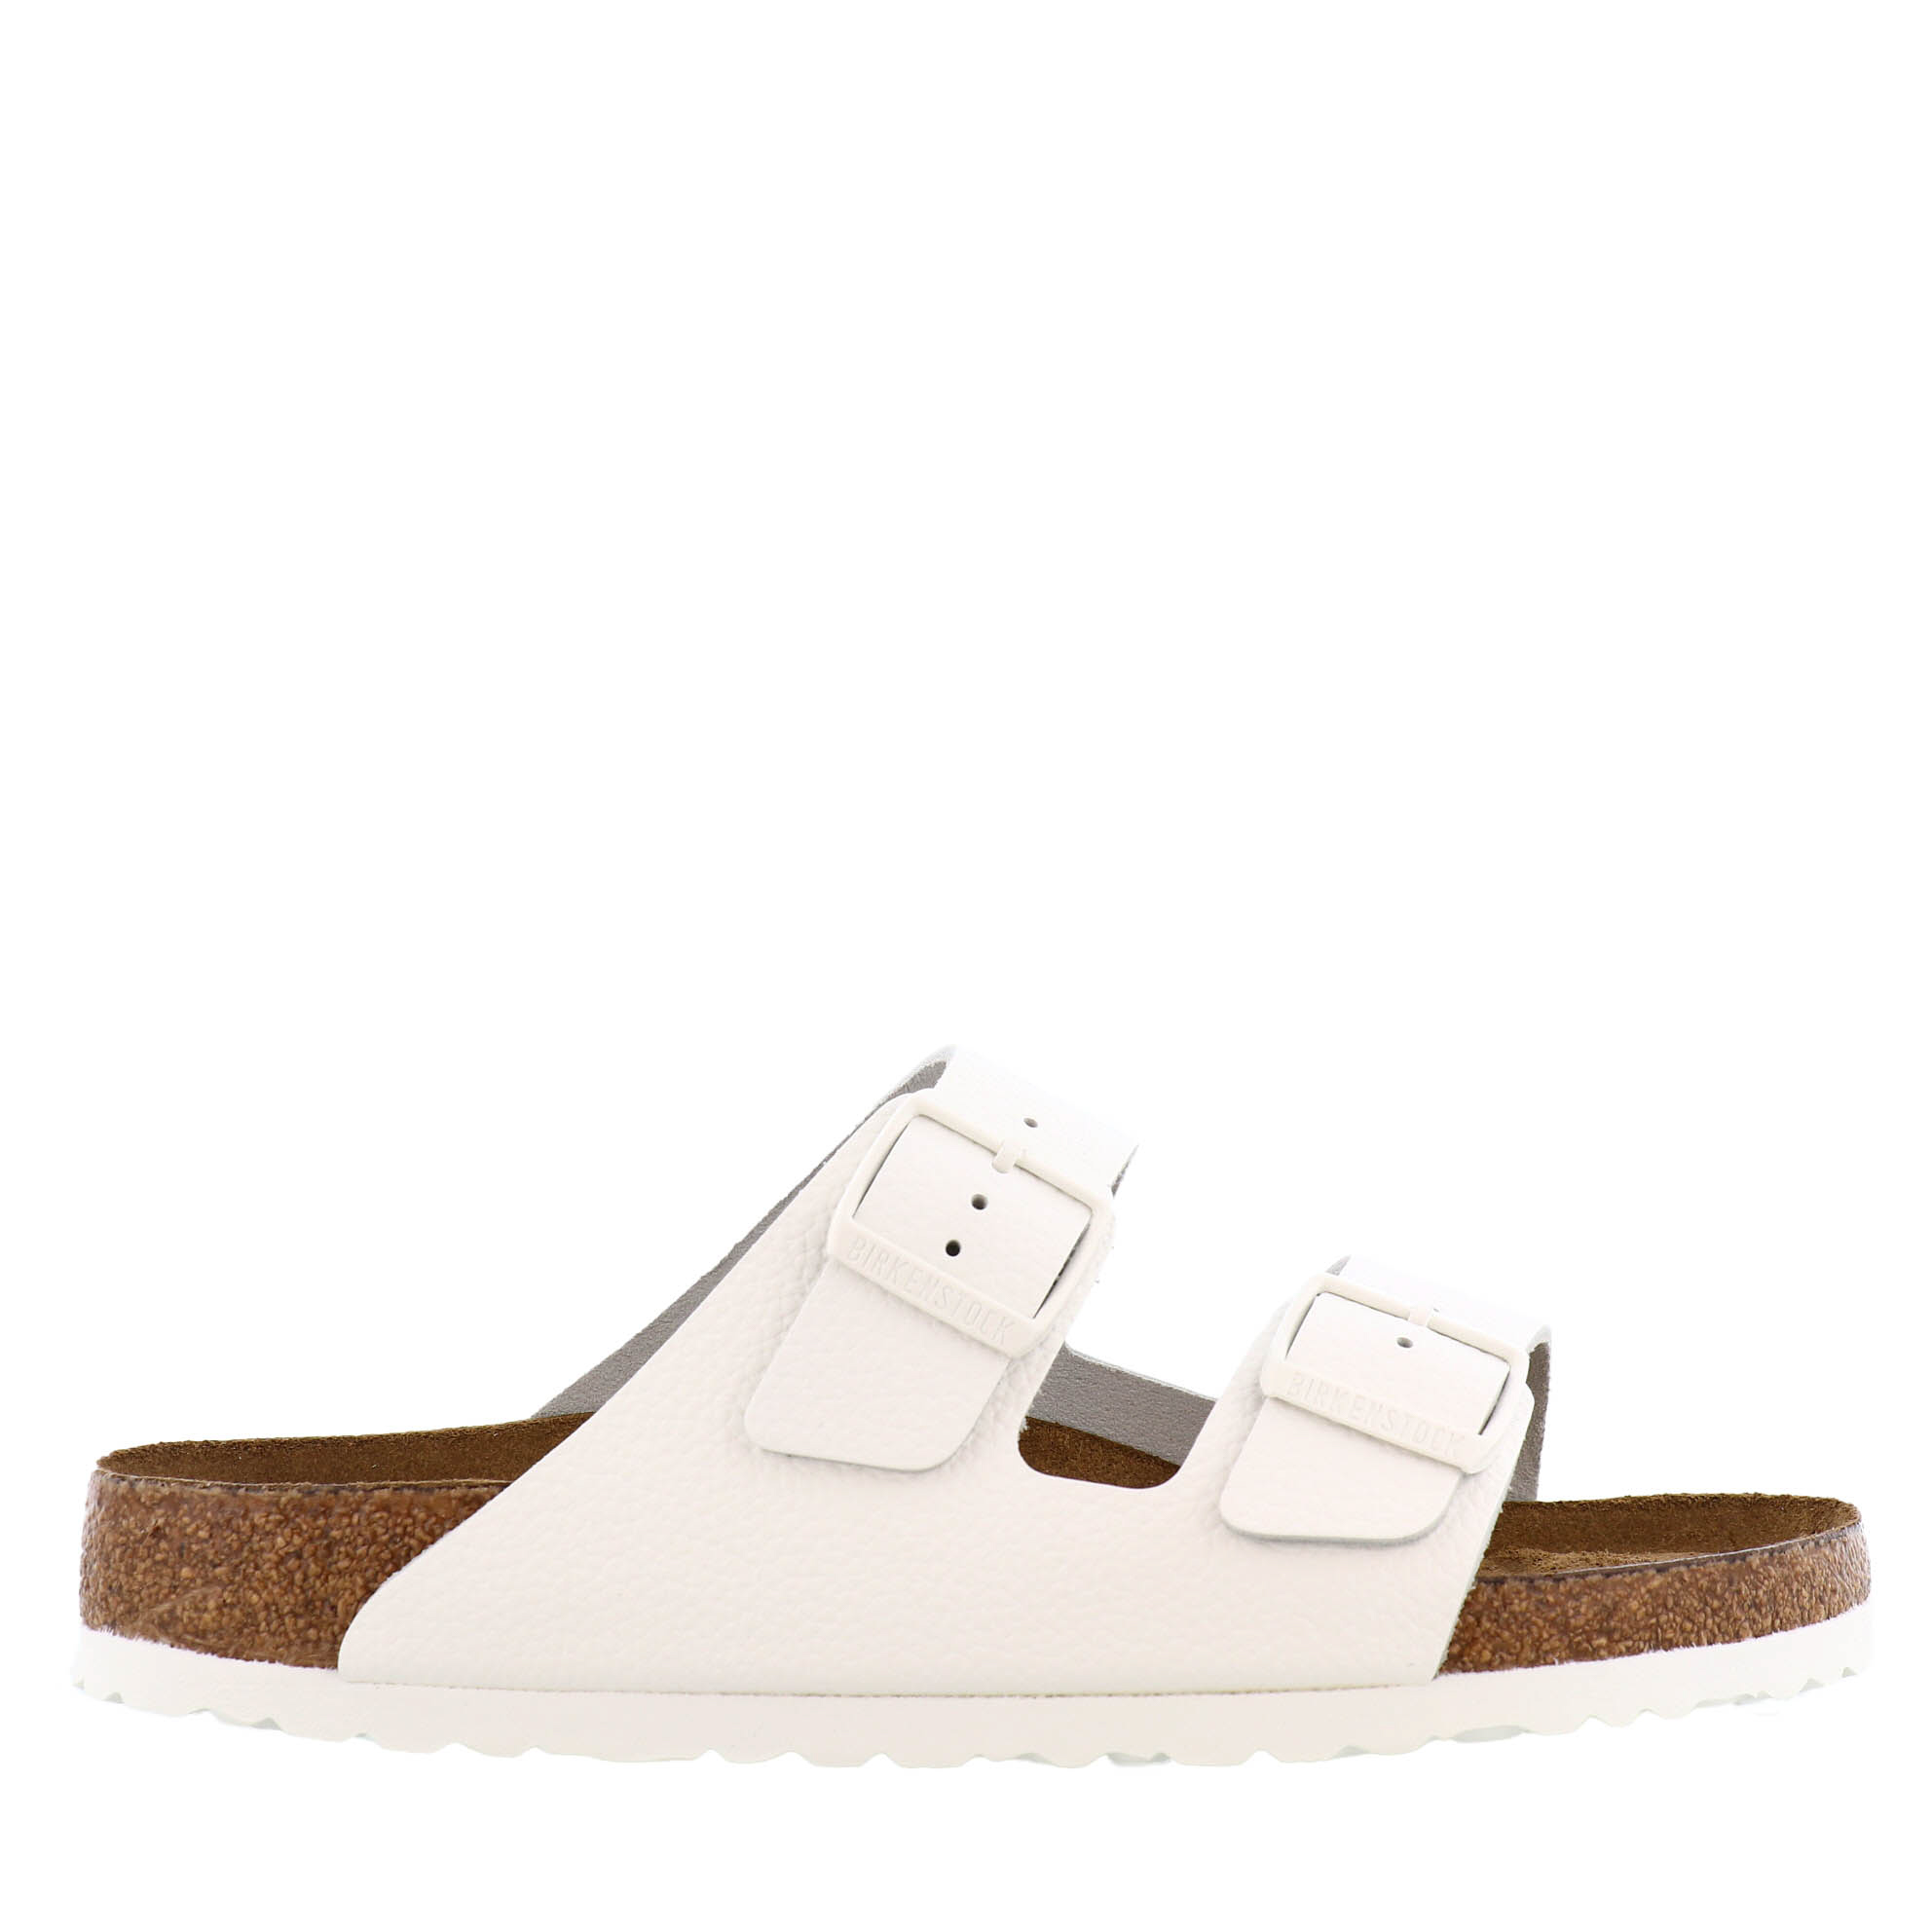 Birkenstock Arizona Soft White Leather - Kunitz Shoes